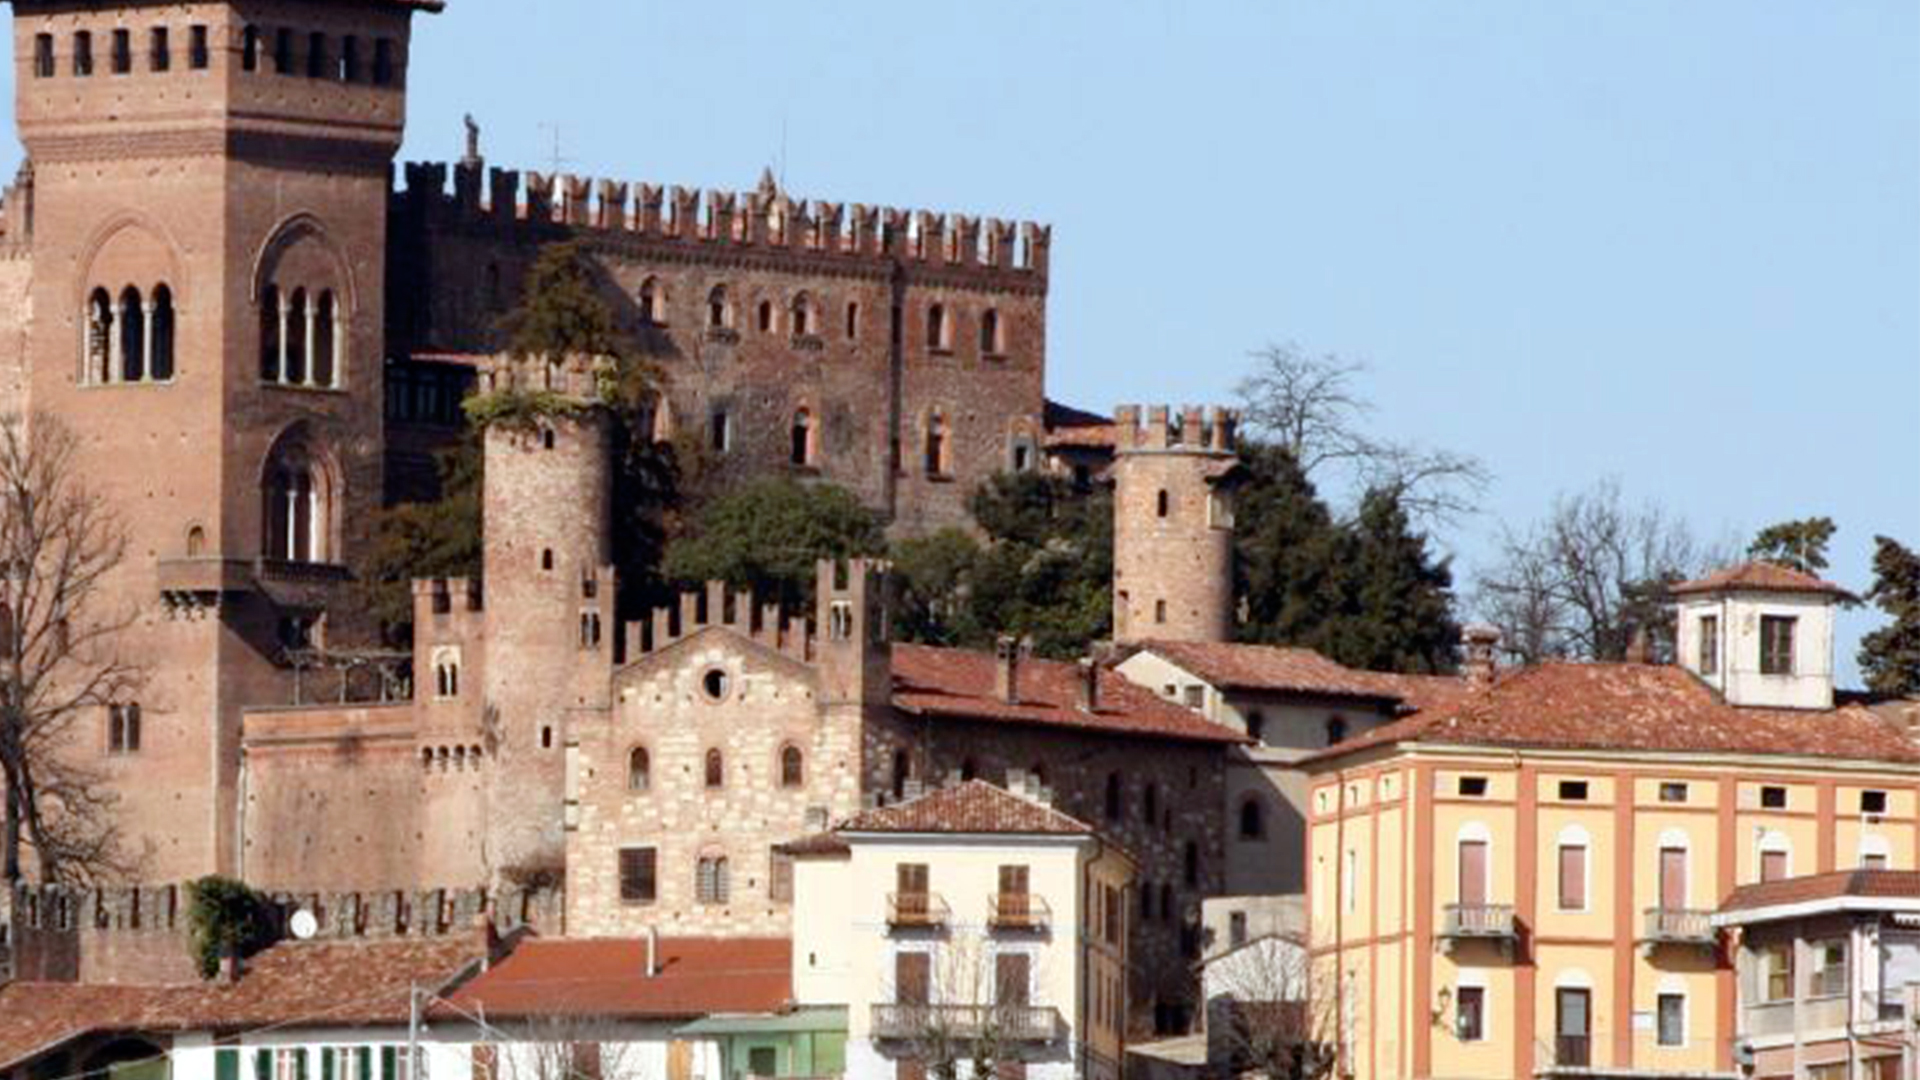 Gabiano Monferrato: venticinquenne uccide la madre a coltellate al termine di un litigio